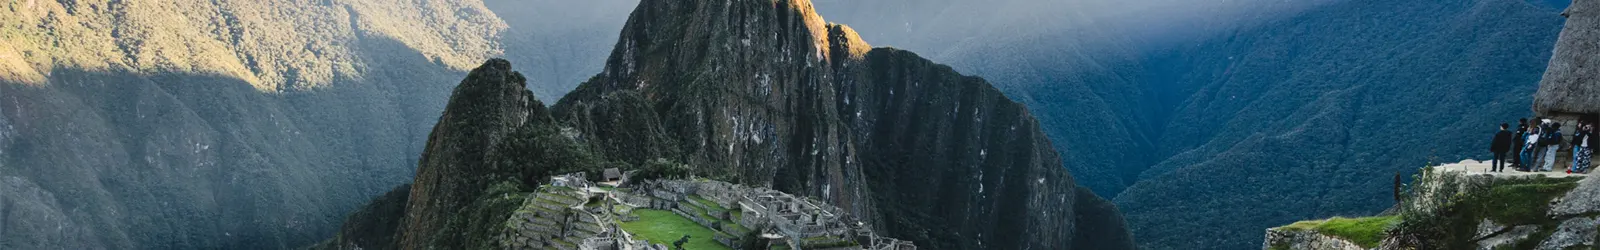 Moonstone Trek to Machu Picchu 5D/4N